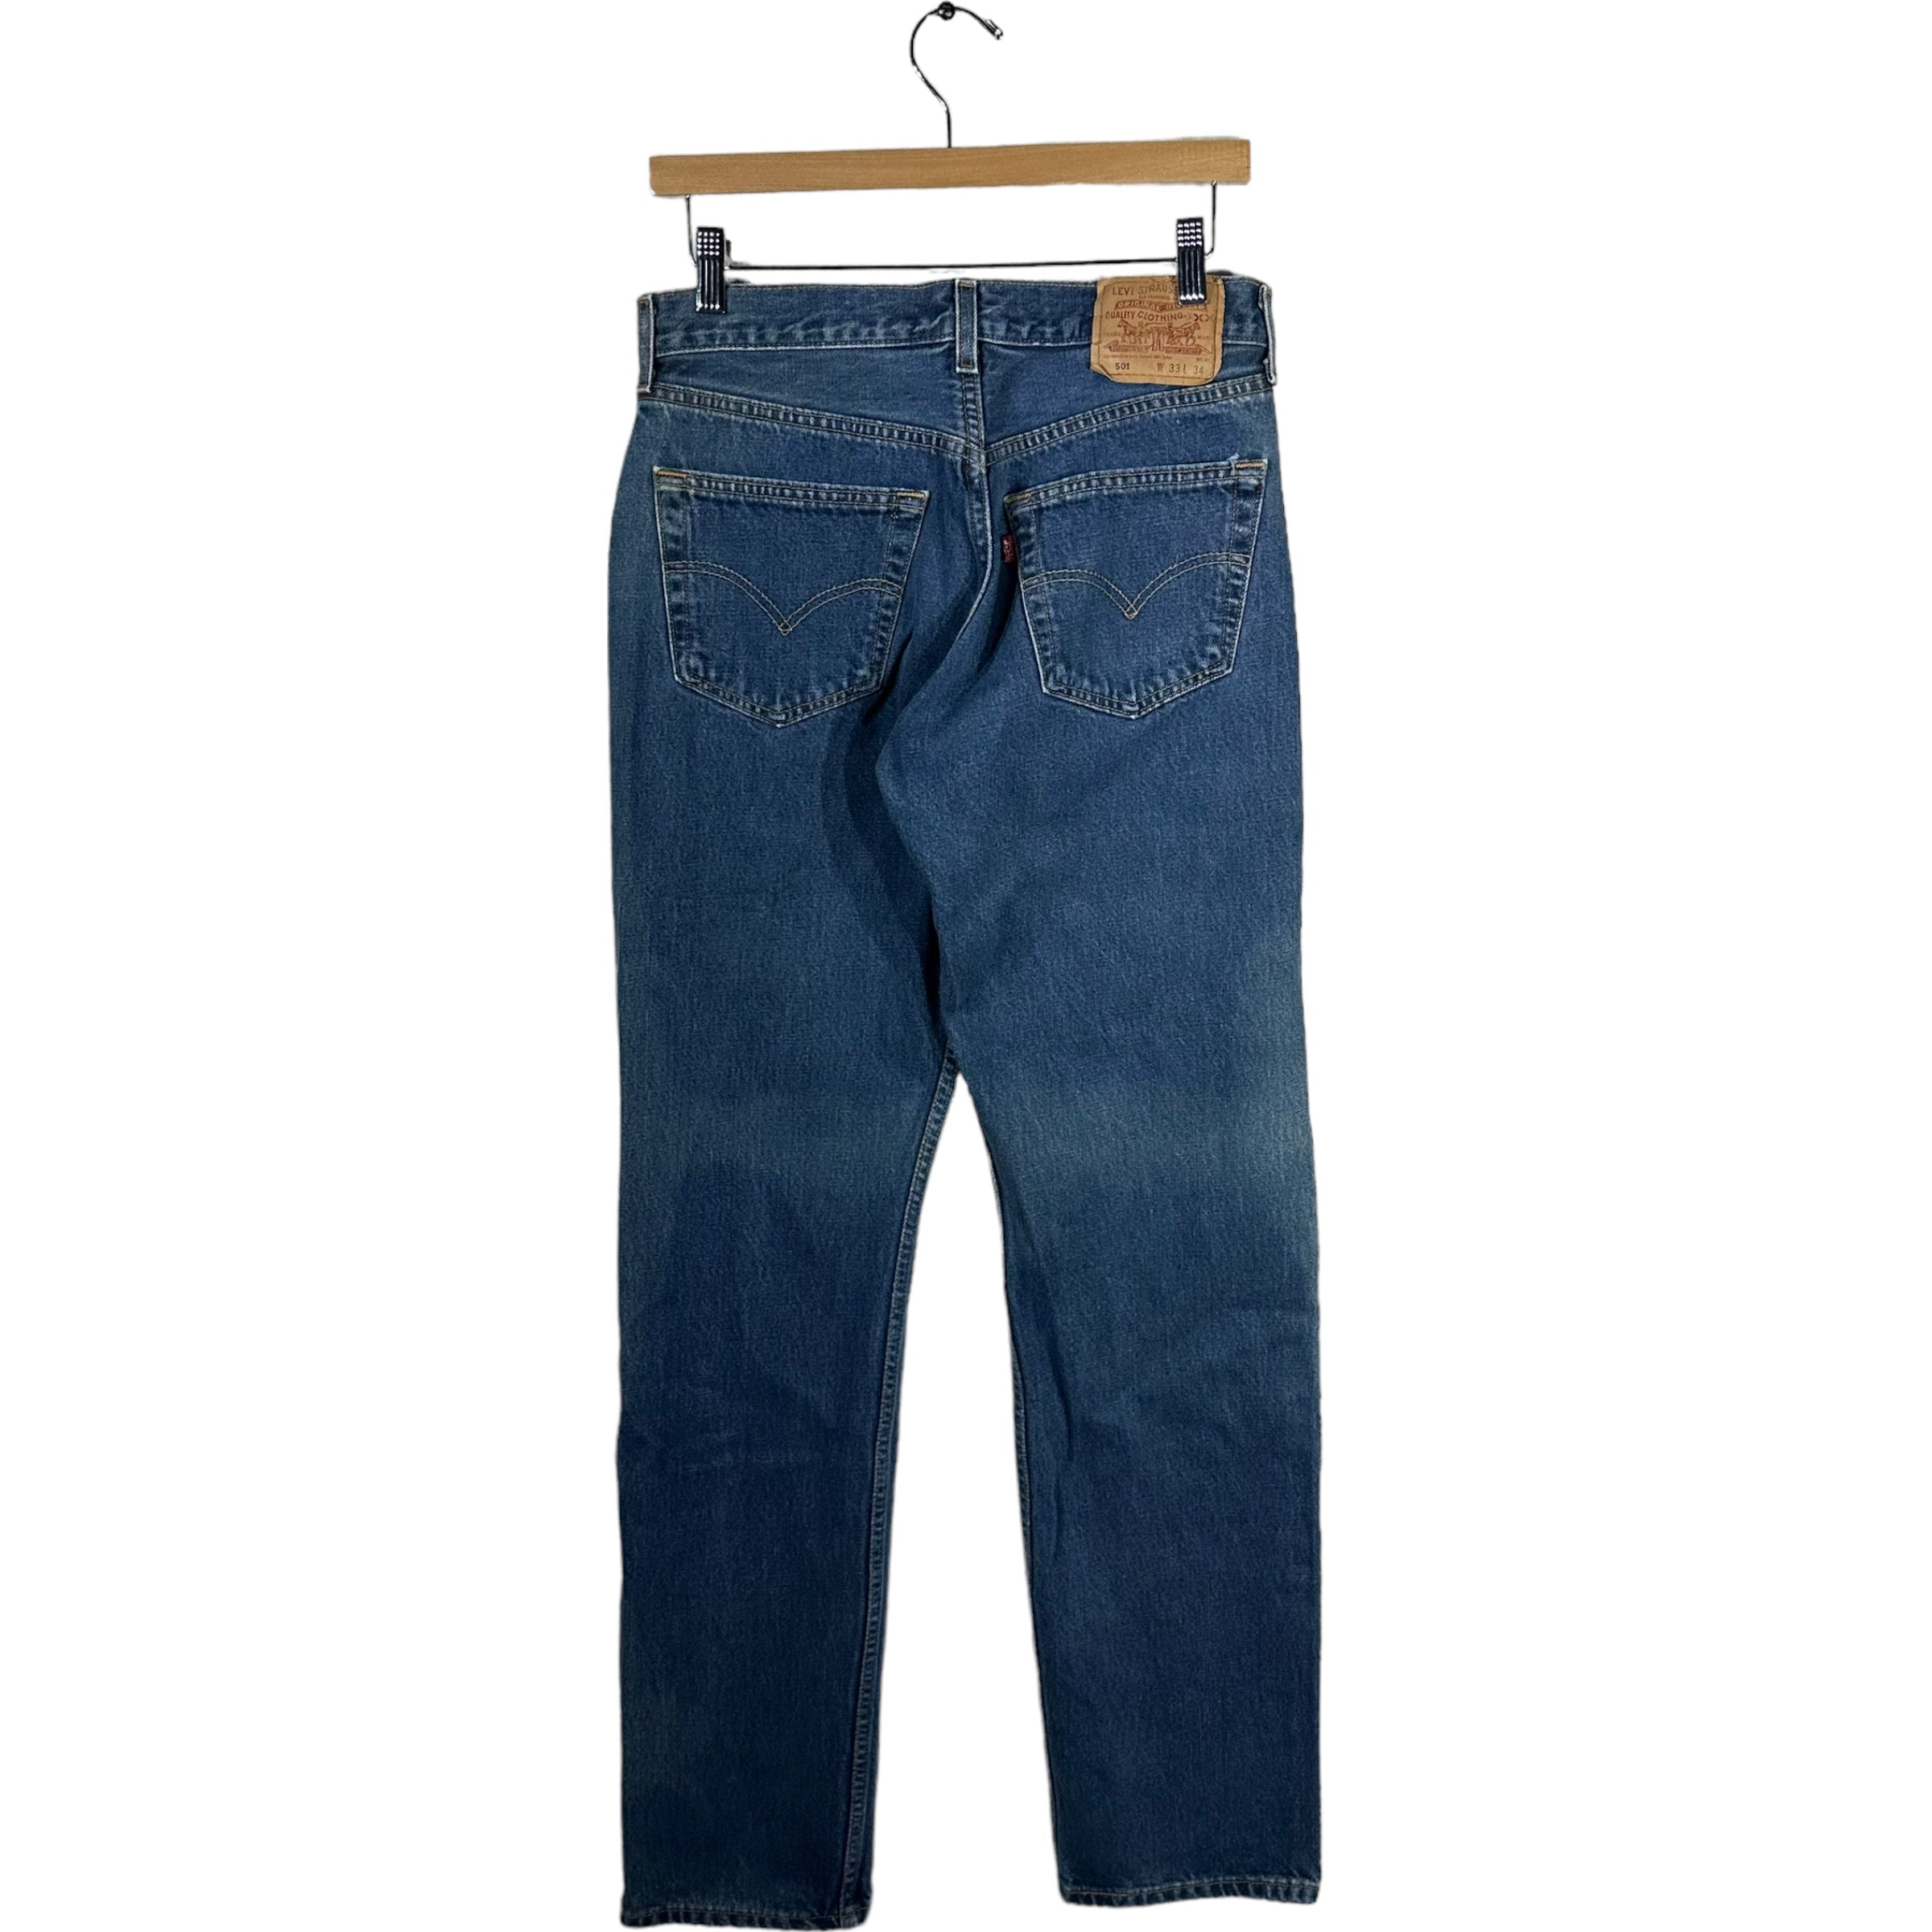 Vintage Levi's 501 Jeans 90s